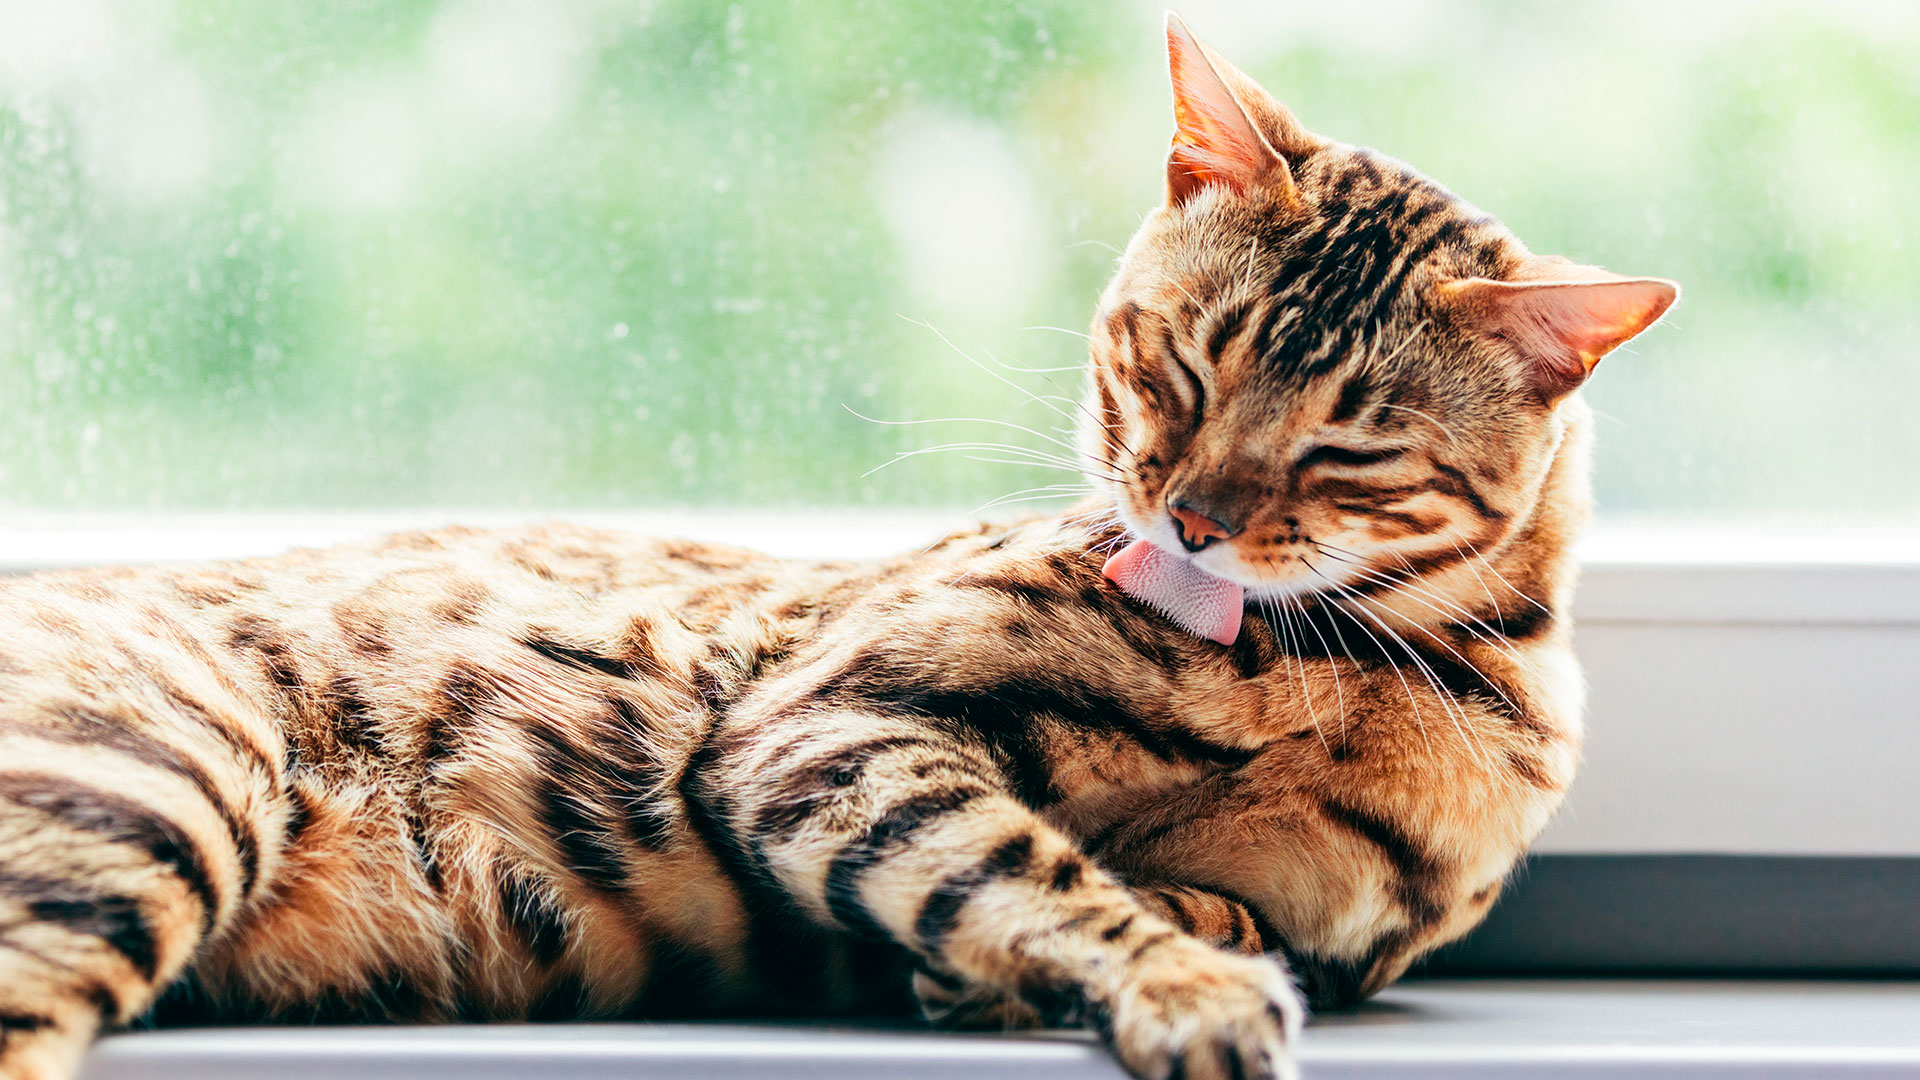  Los gatos tienen una compulsión de lamerse y peinarse todo el cuerpo a toda hora (Shutterstock)